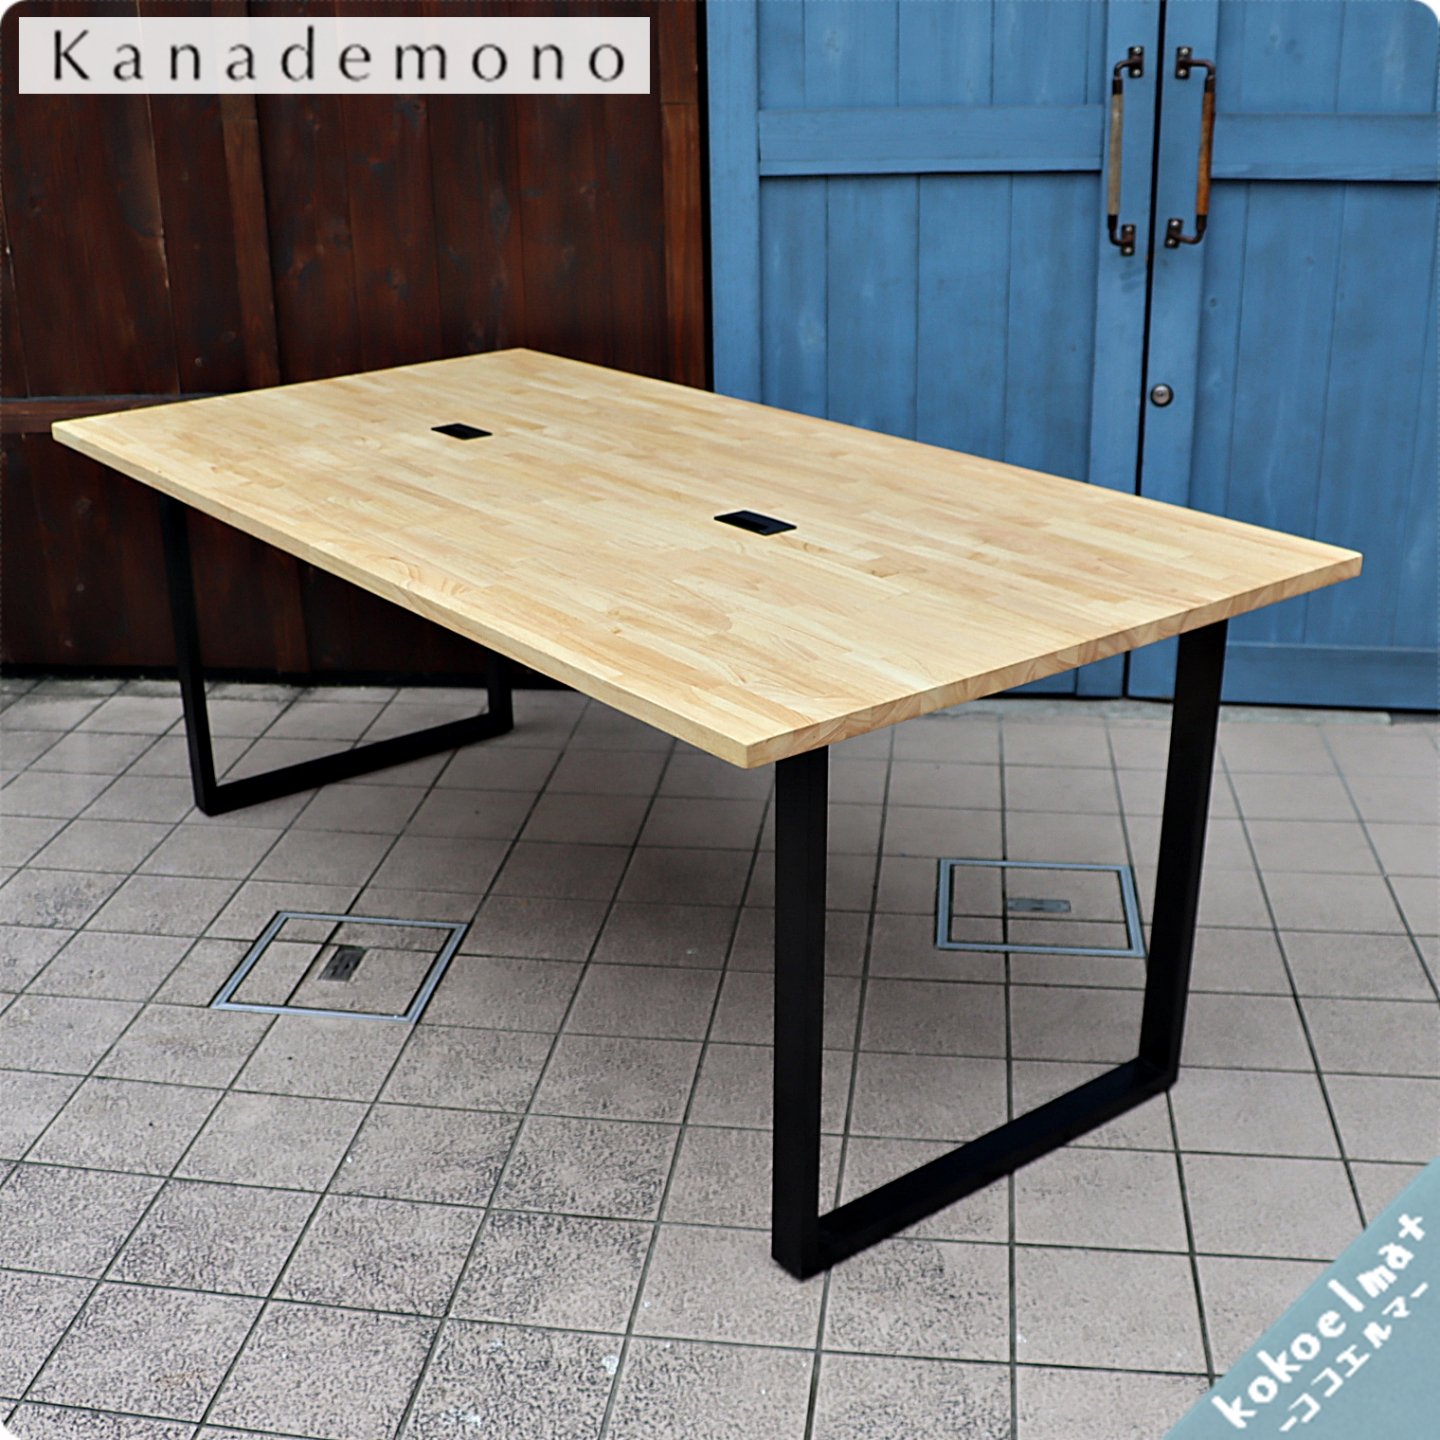 Kanademono(かなでもの)の人気シリーズTHE TABLE ラバーウッドN 